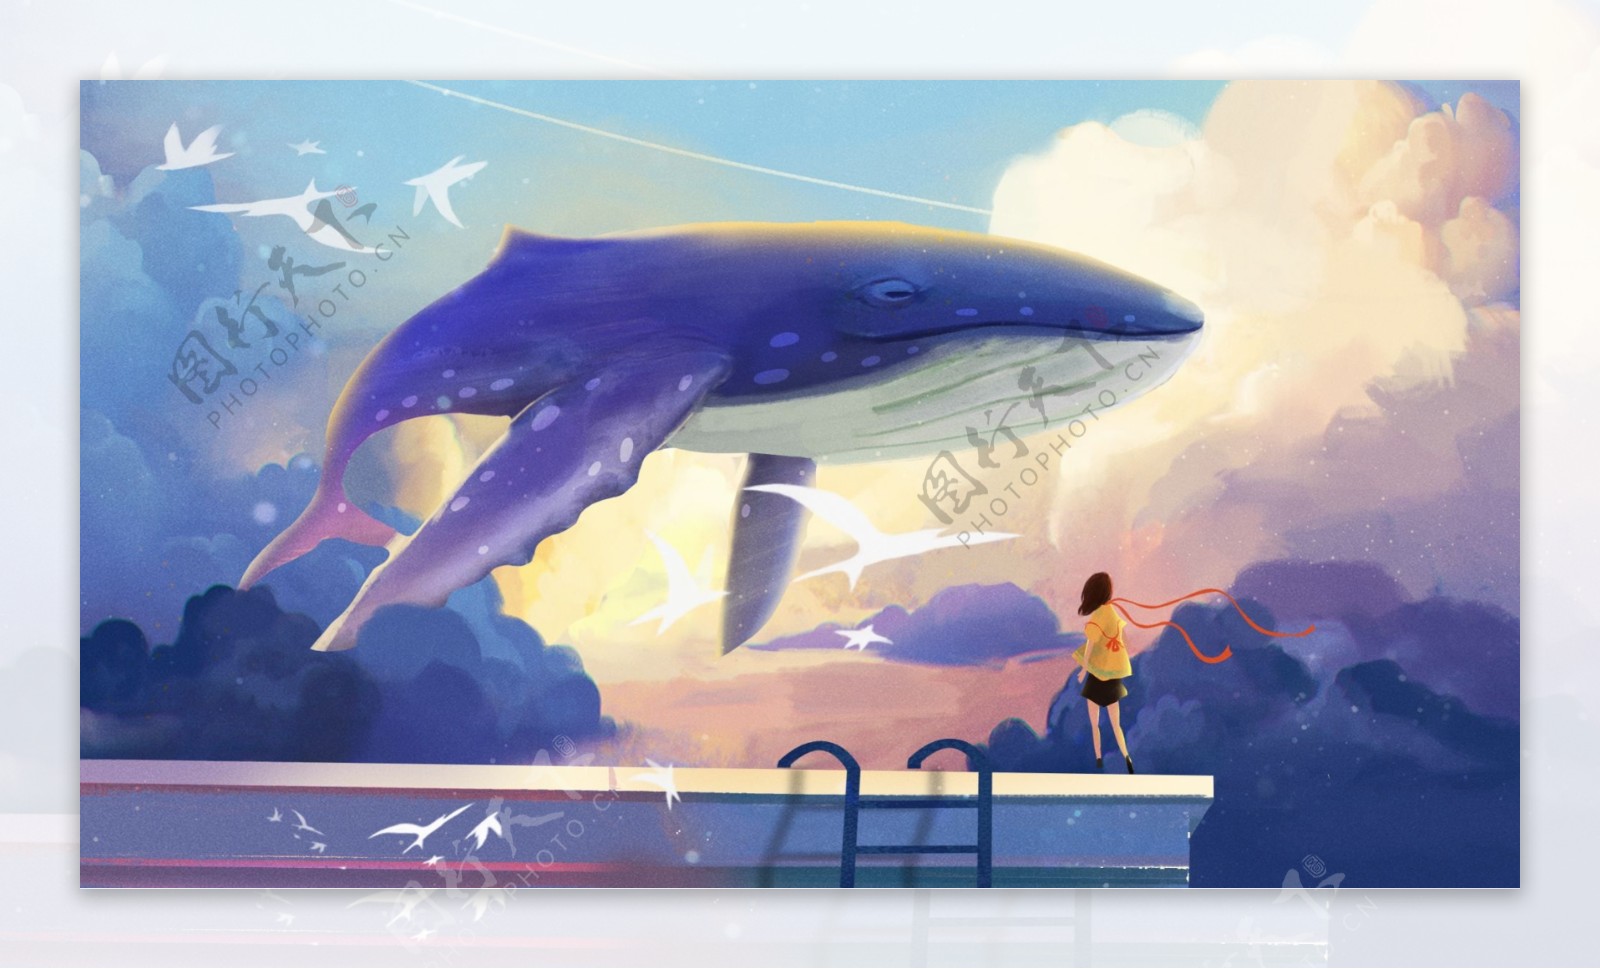 和蓝色鲸鱼游戏的小女孩卡通元素素材图片下载-素材编号13655933-素材天下图库